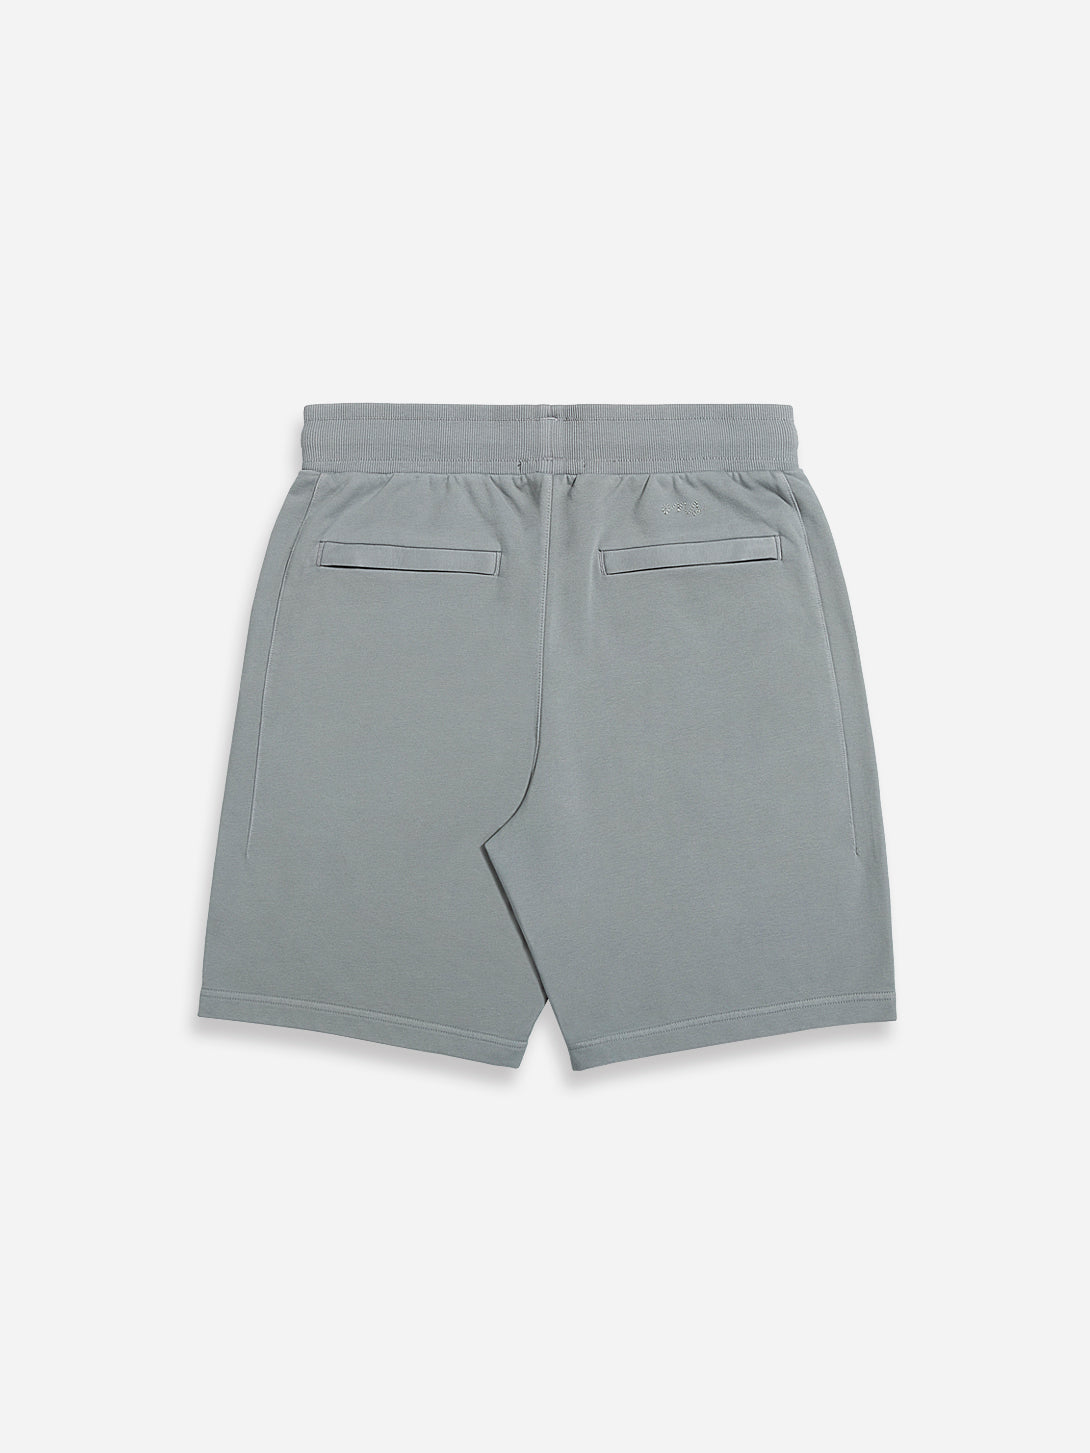 Grey Men's Bklyn Shorts